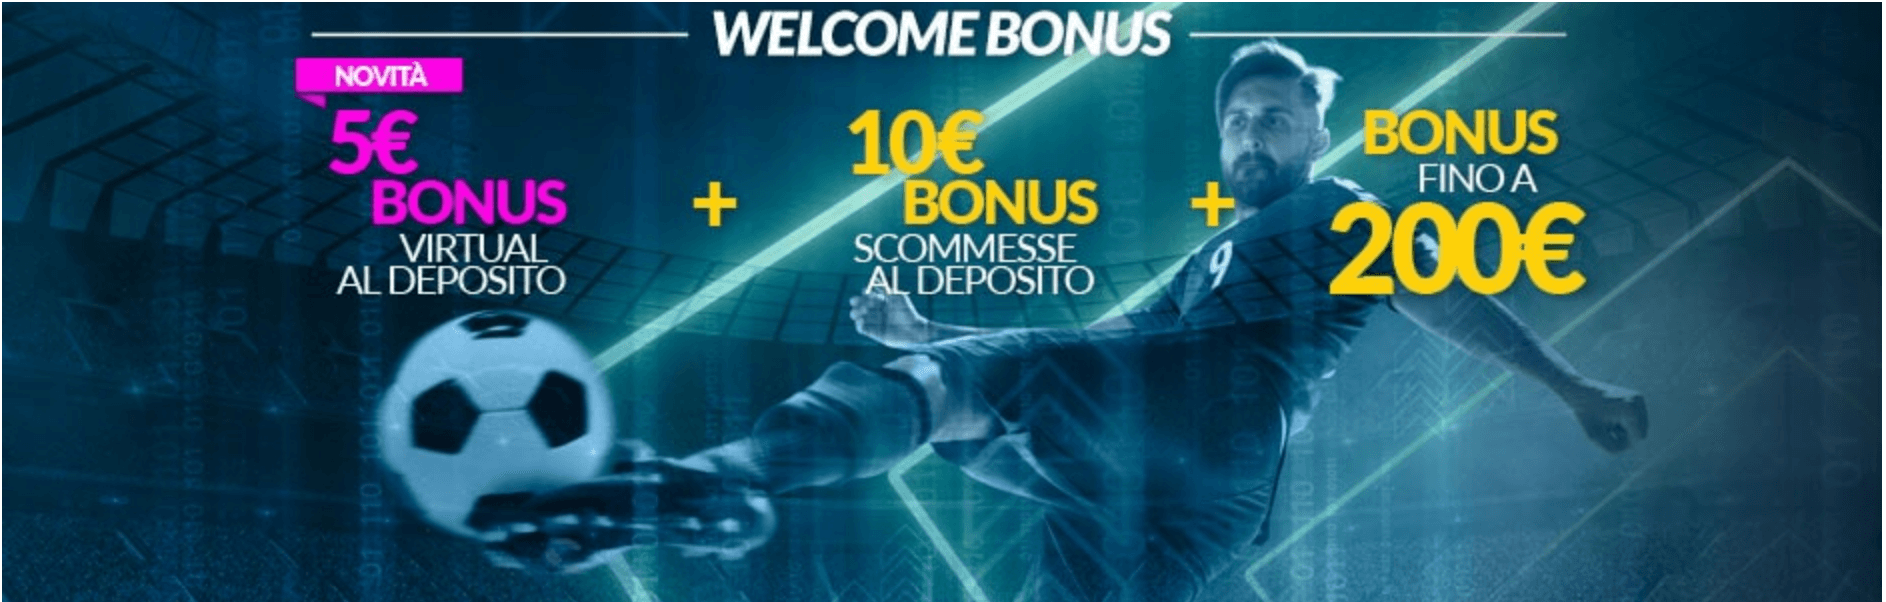 Eurobet bonus benvenuto